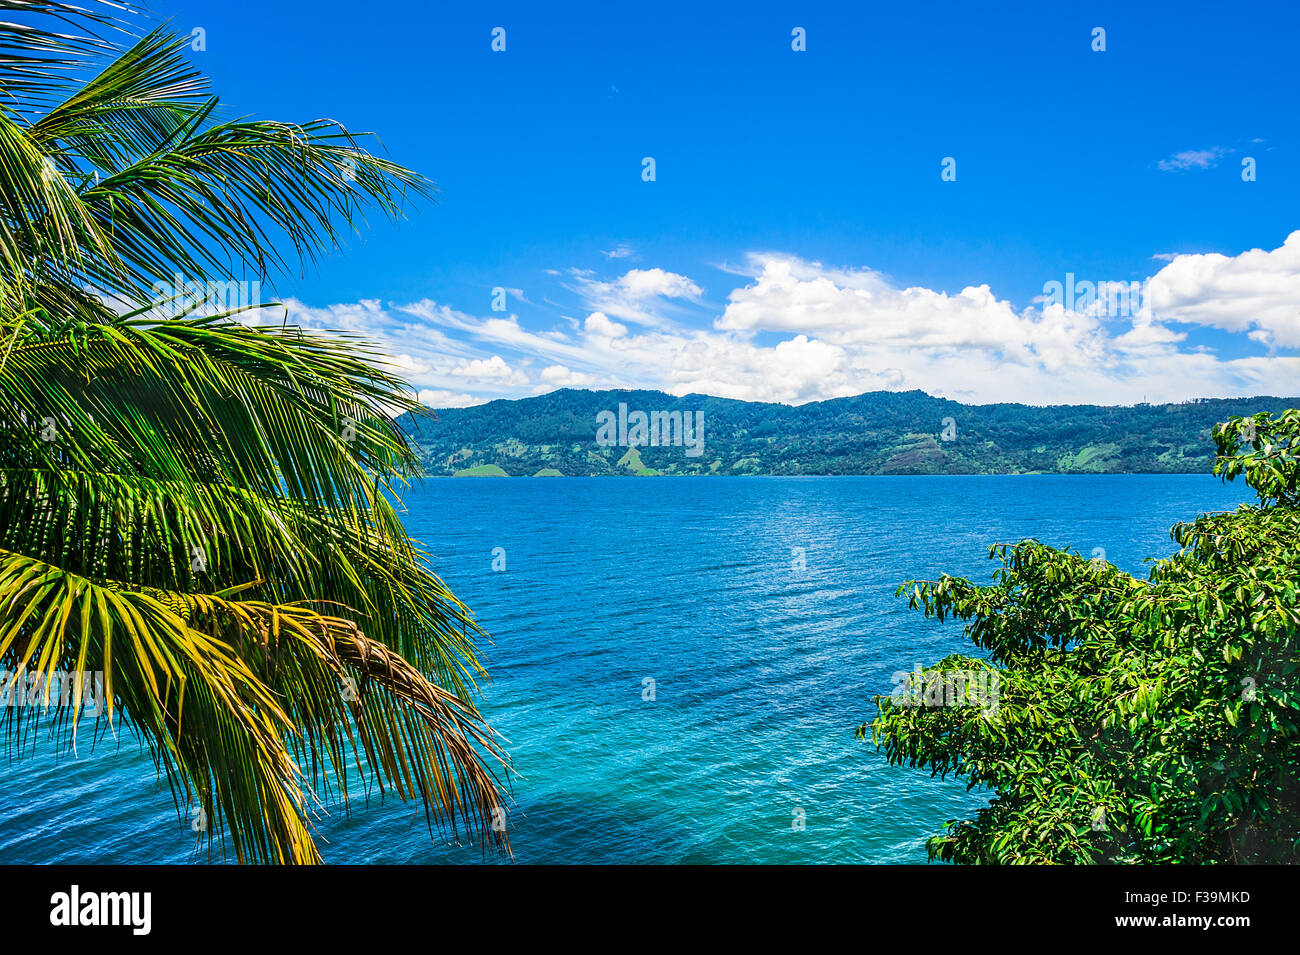 View of Lake Toba in Sumatra, Indonesia, Southeast Asia Stock Photo